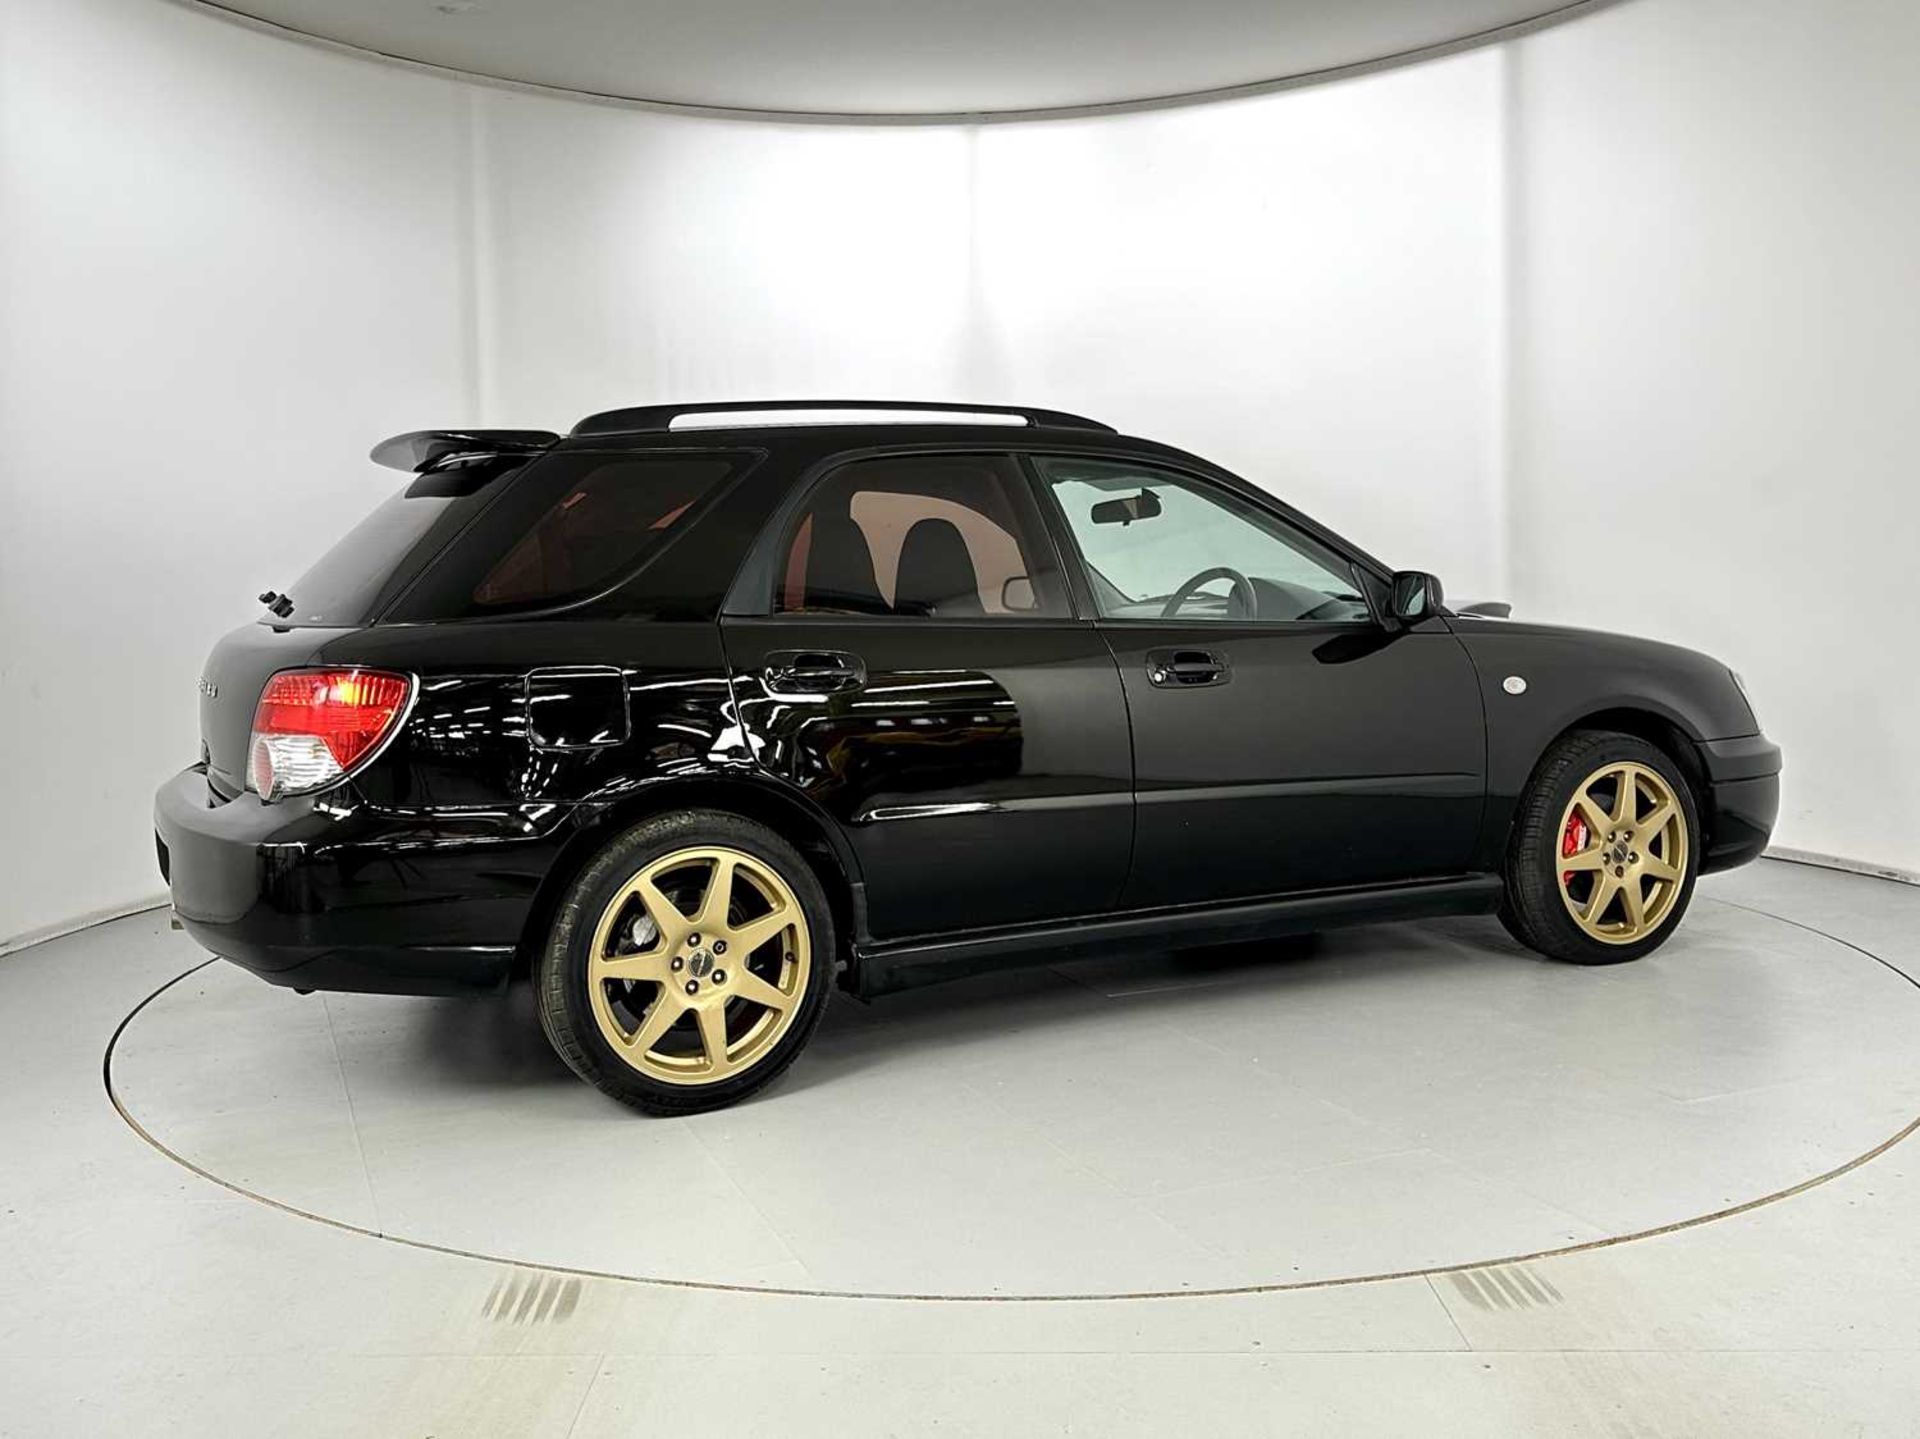 2004 Subaru Impreza WRX - Bild 10 aus 35